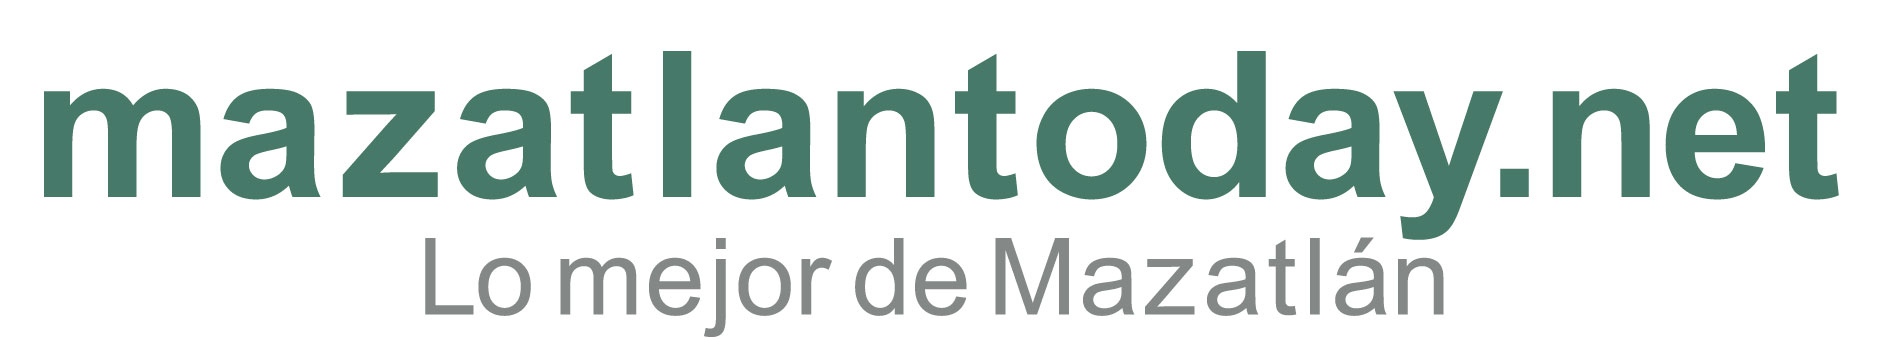 Información sobre Isla de La Piedra Mazatlán | mazatlantoday.net presentación de guía de viaje 2022 | INICIO